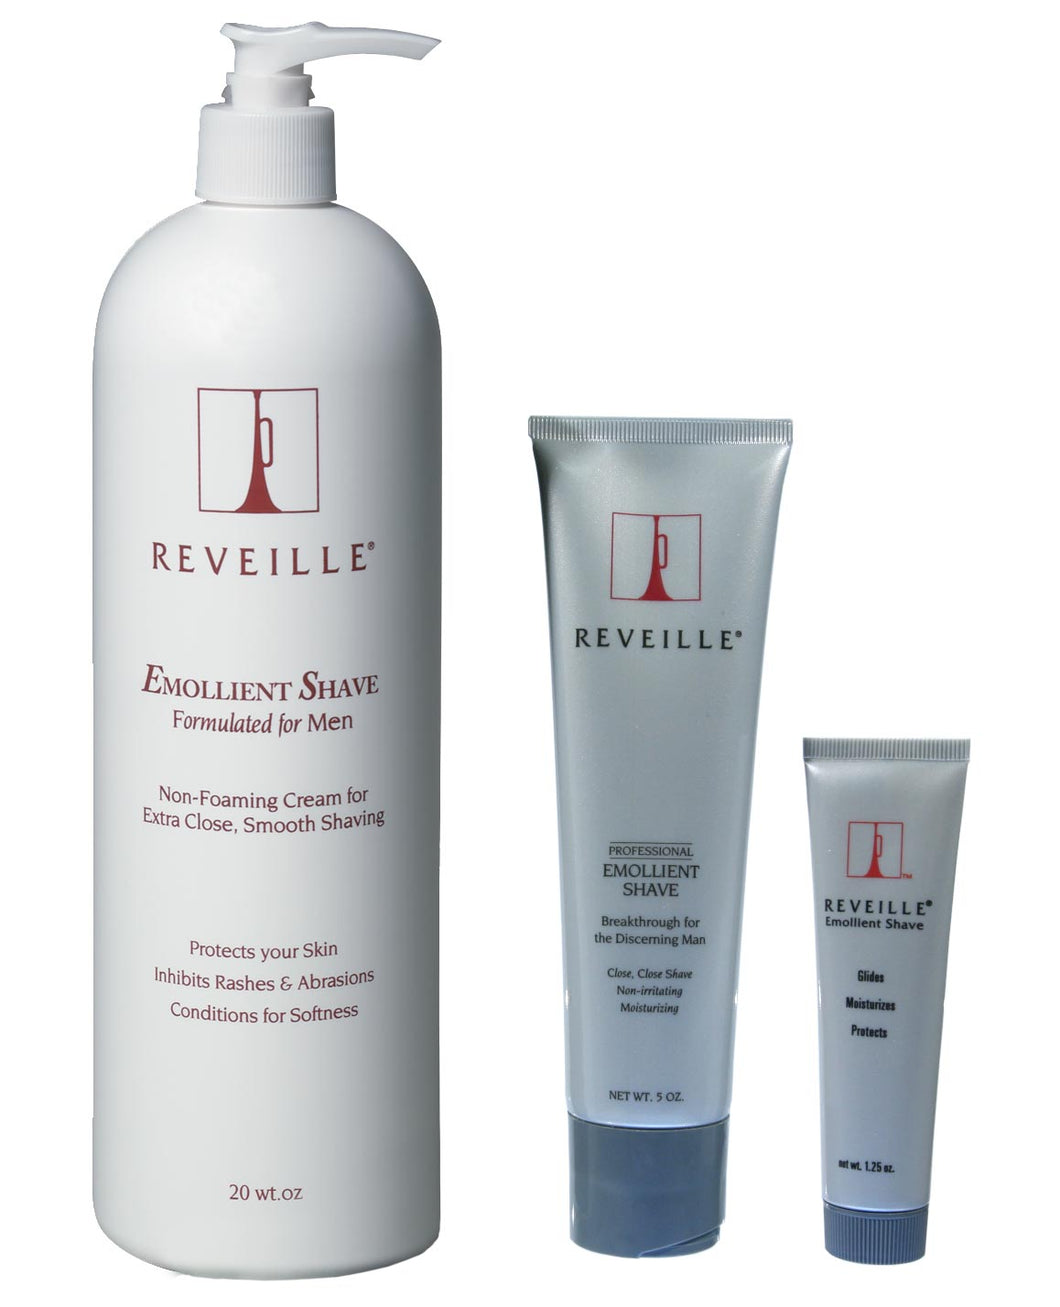 Reveille Emollient Shave Cream “Classic”